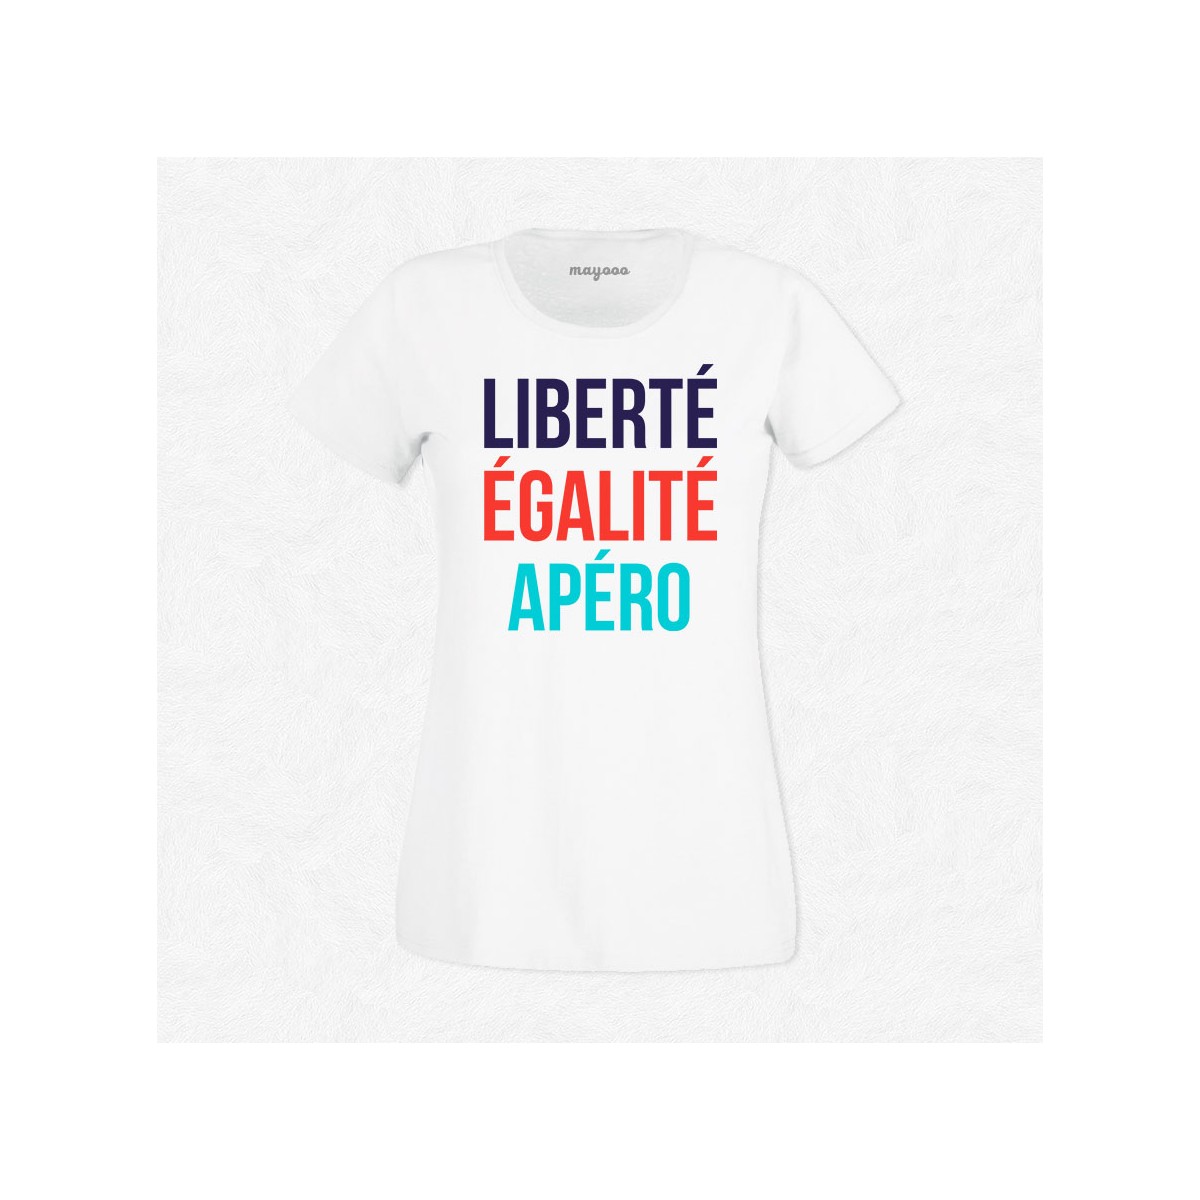 T-shirt Liberté, égalité, apéro